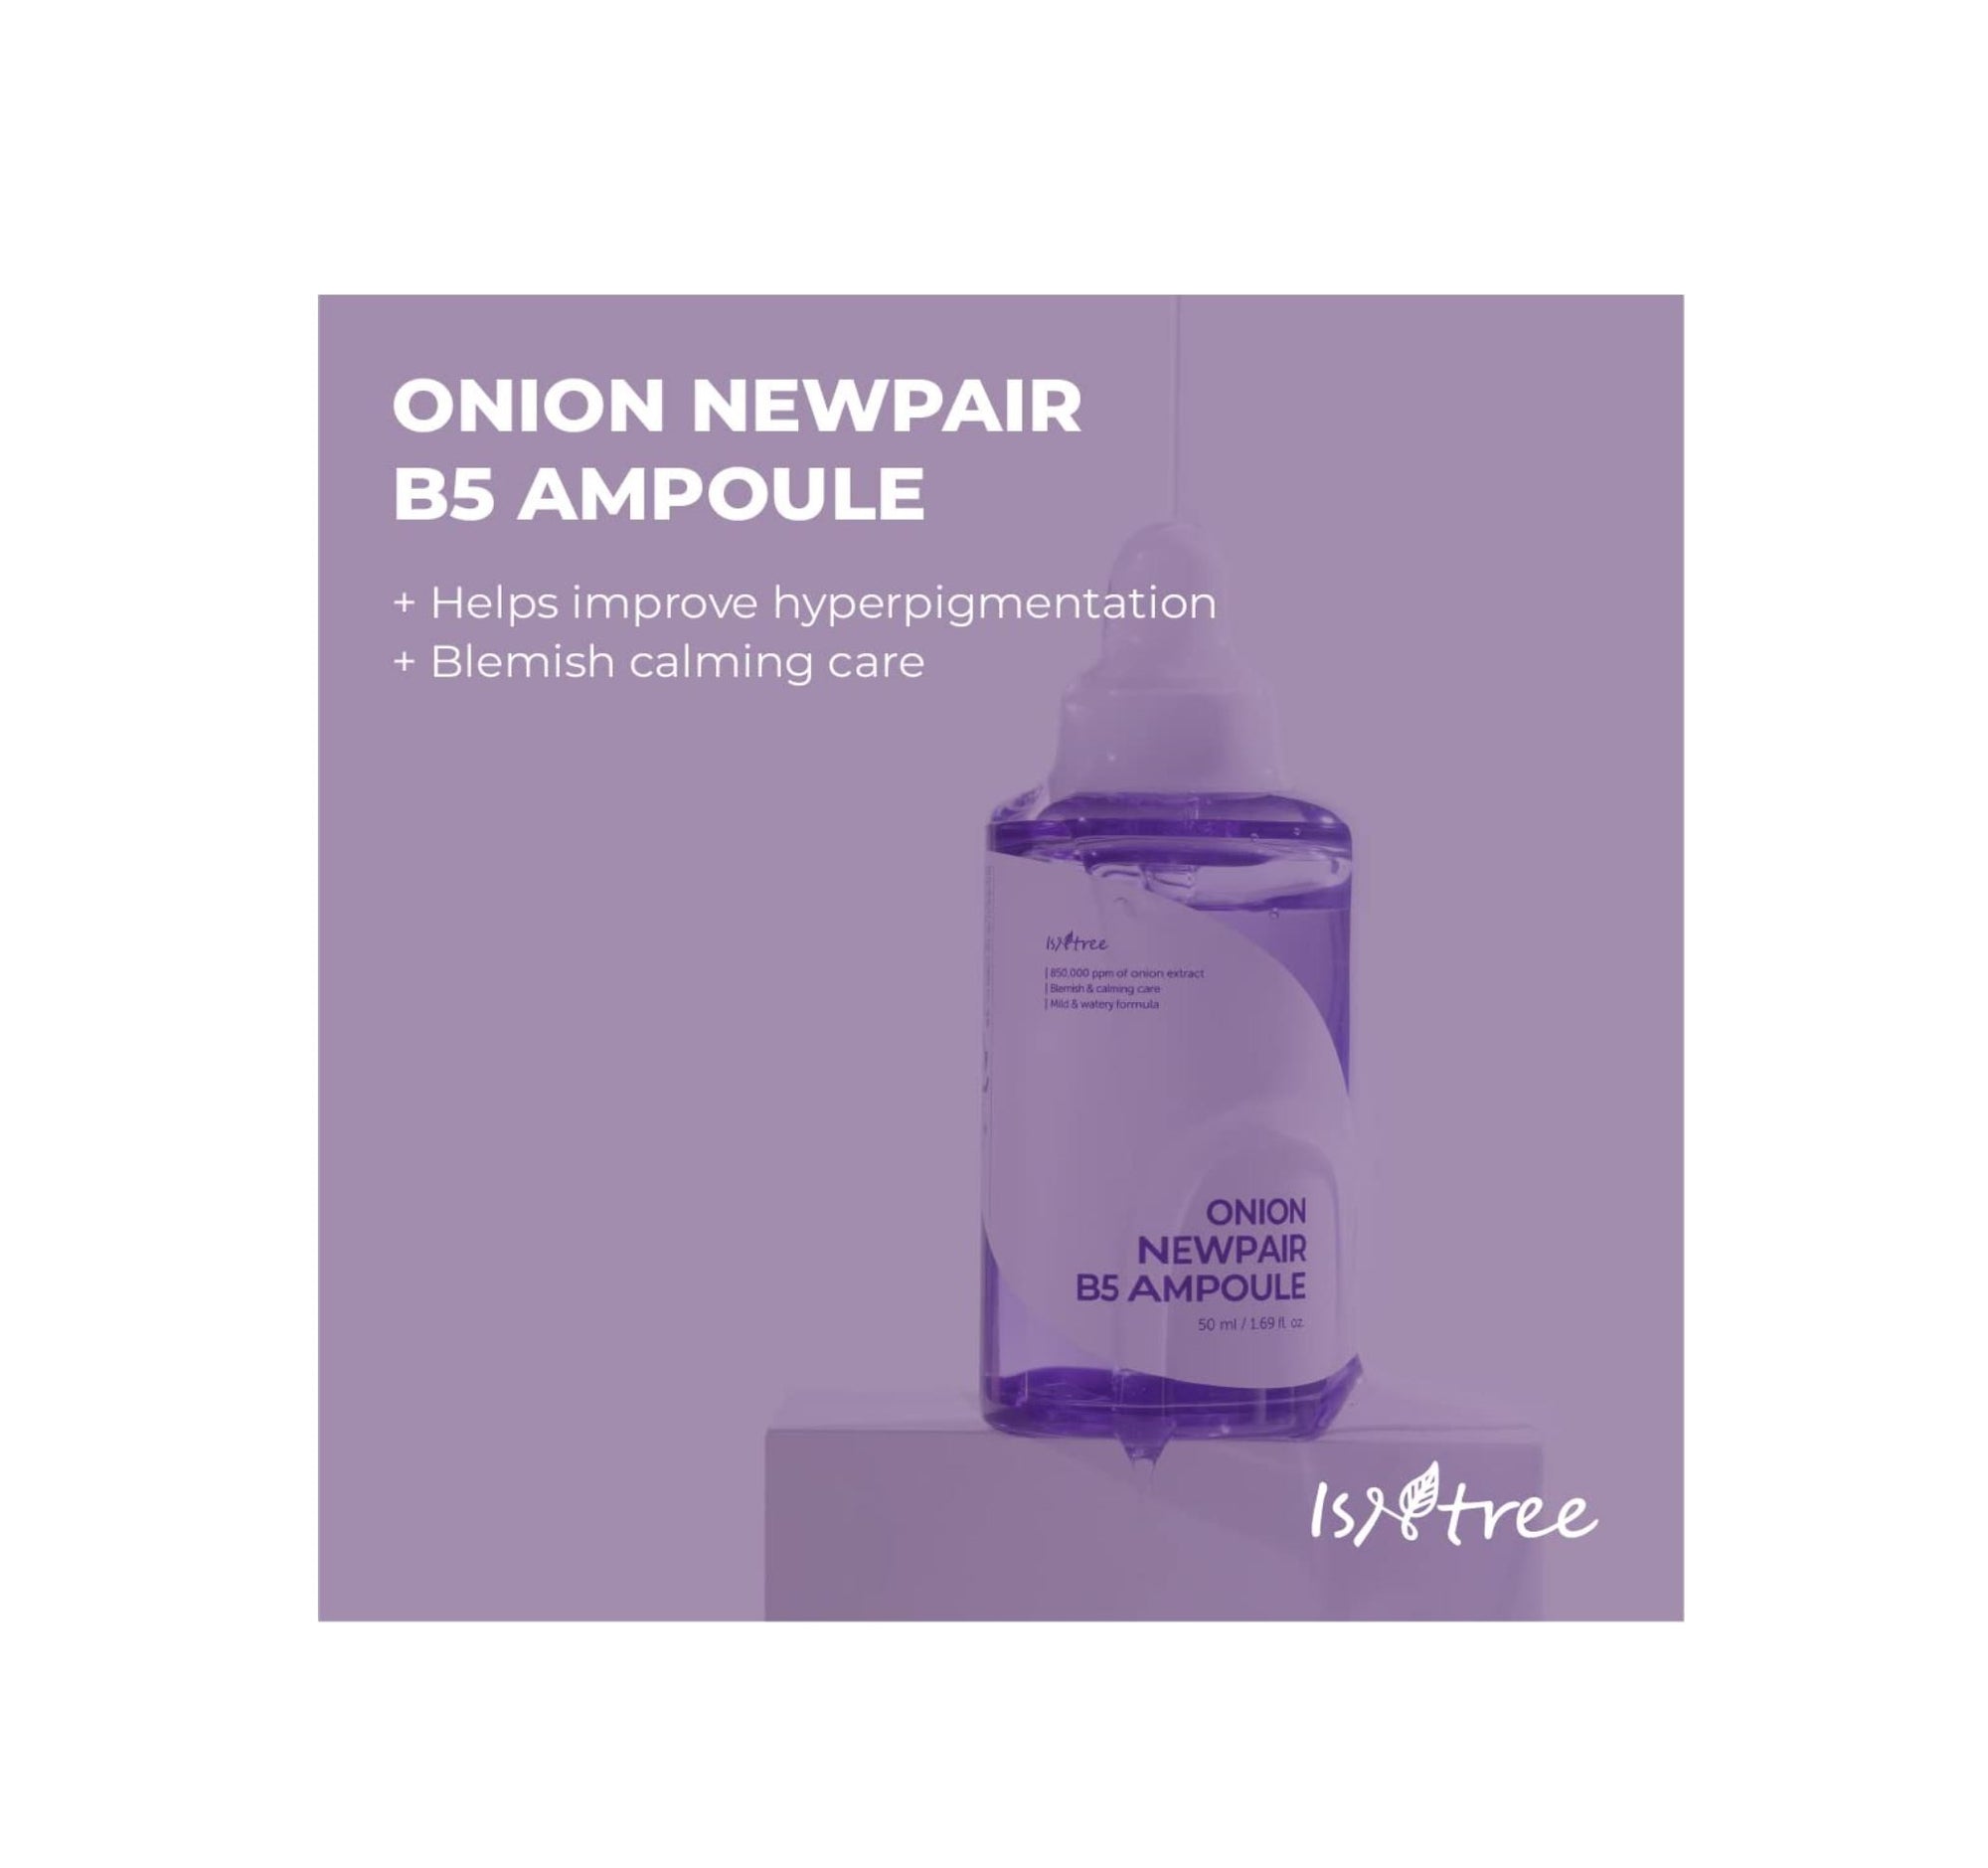 Onion Newpair B5 Ampoule